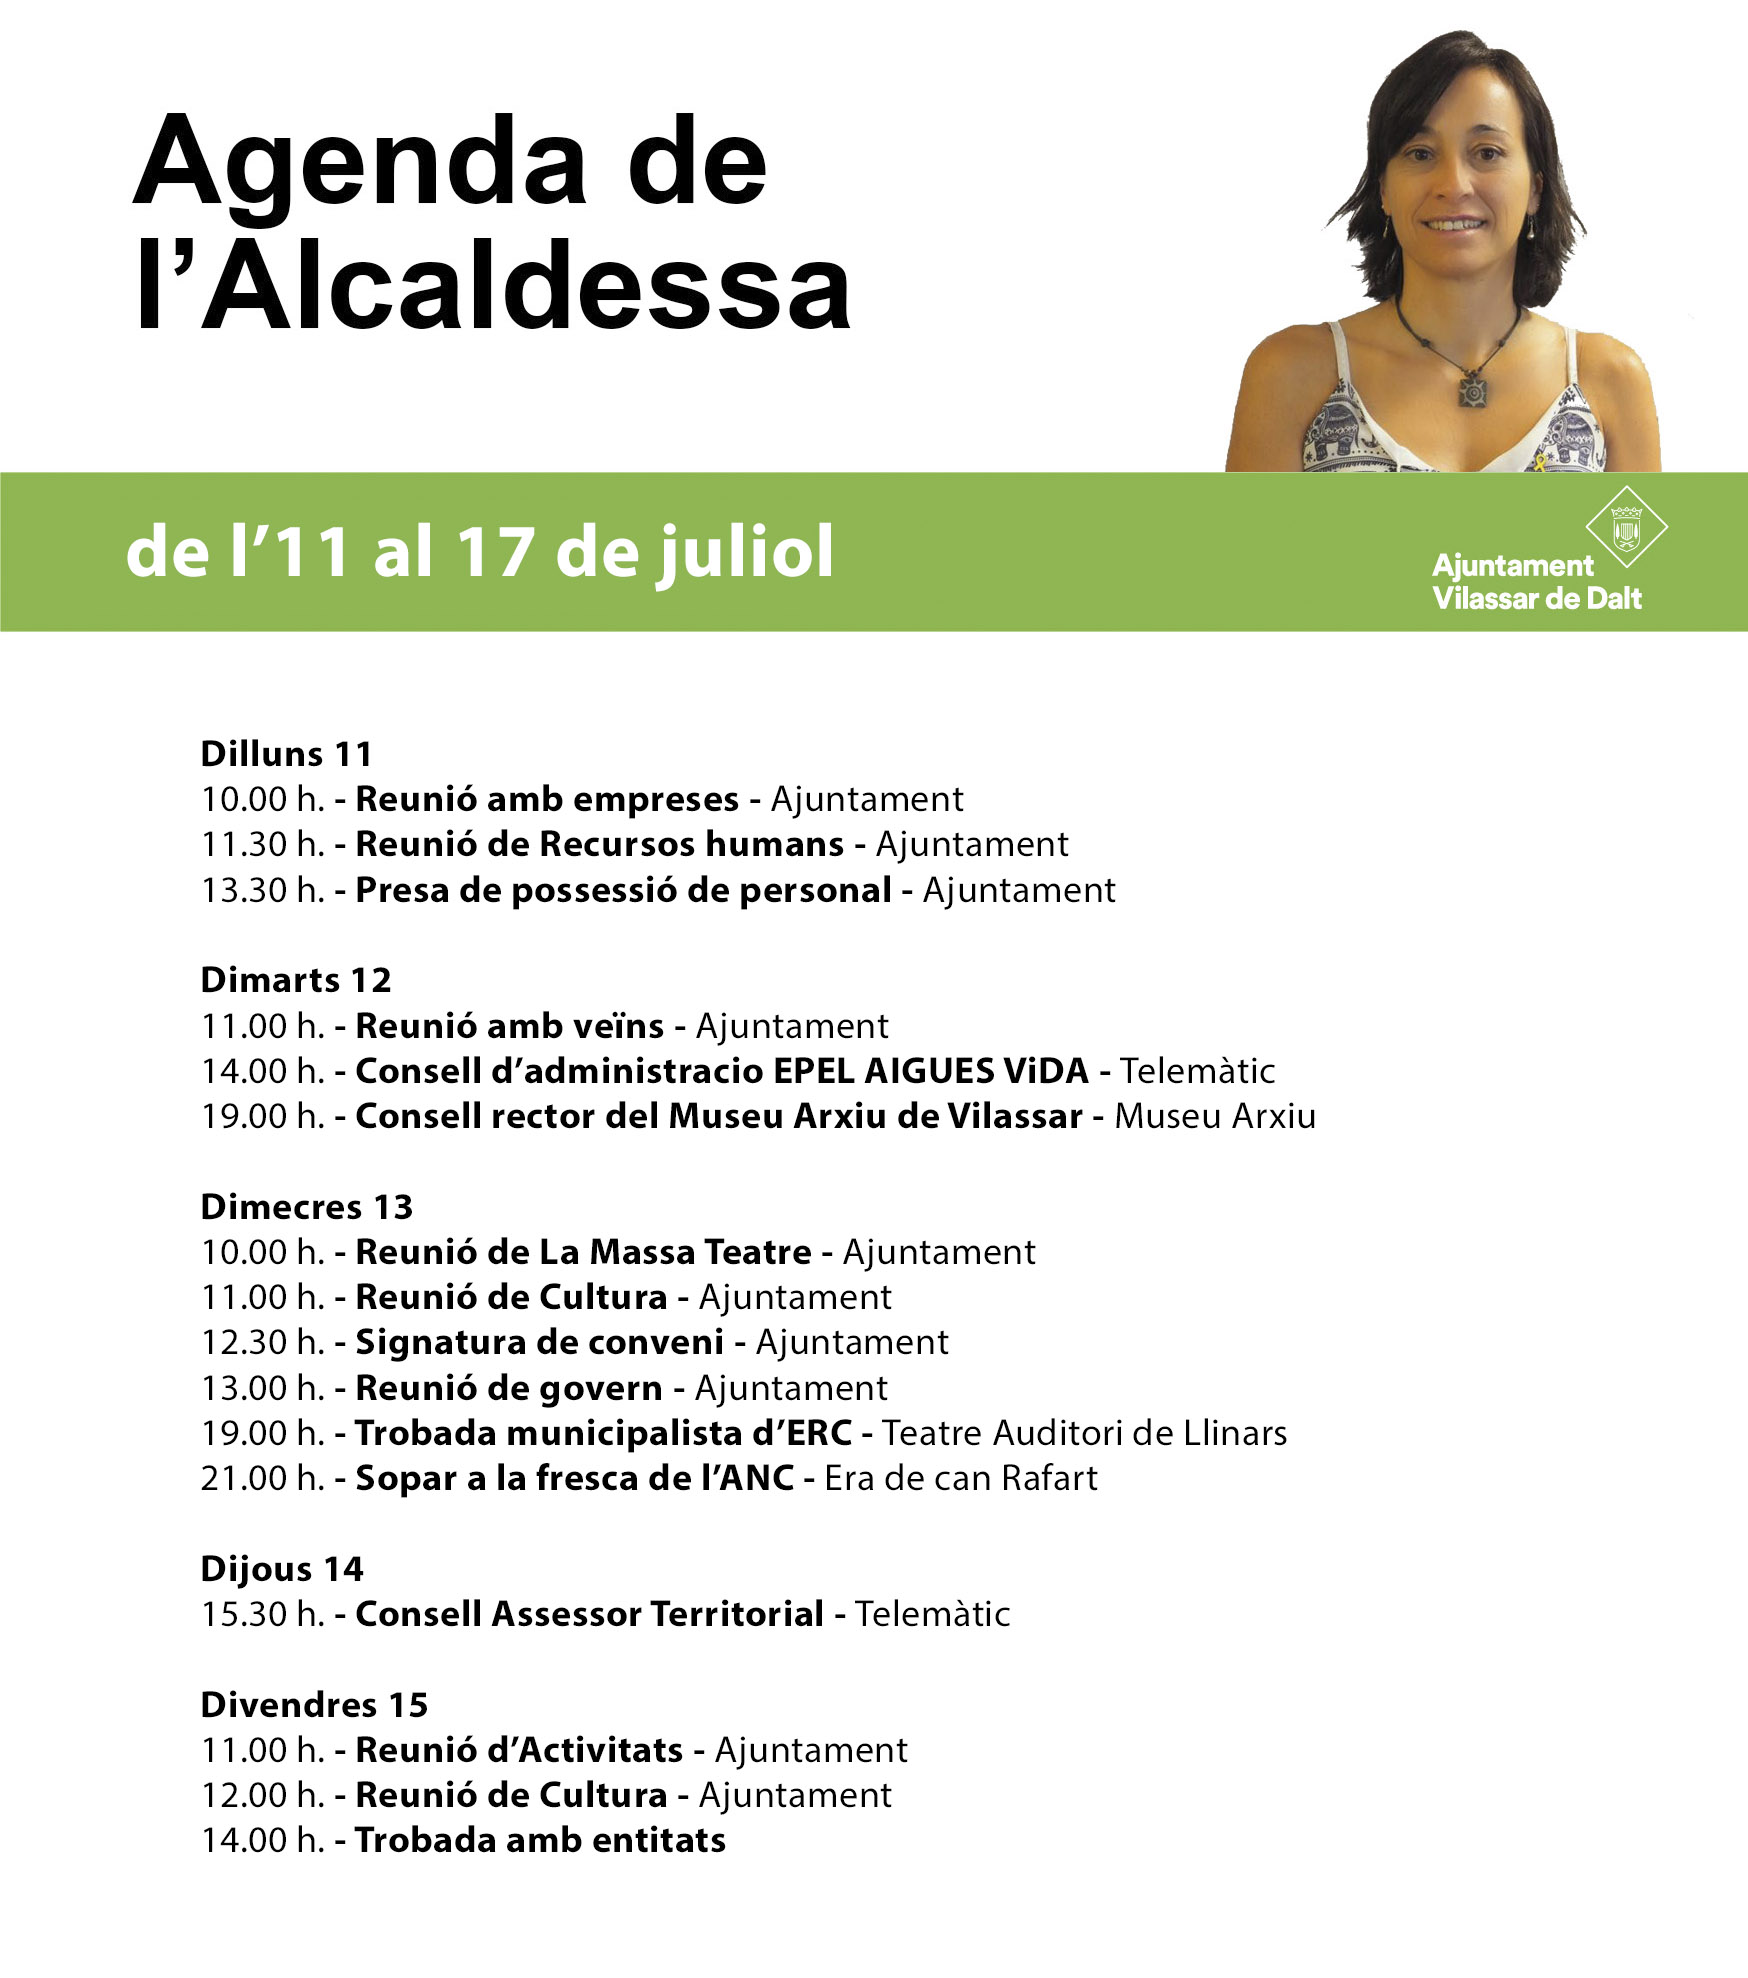 Agenda de l'alcaldessa. De l'11 al 17 de juliol